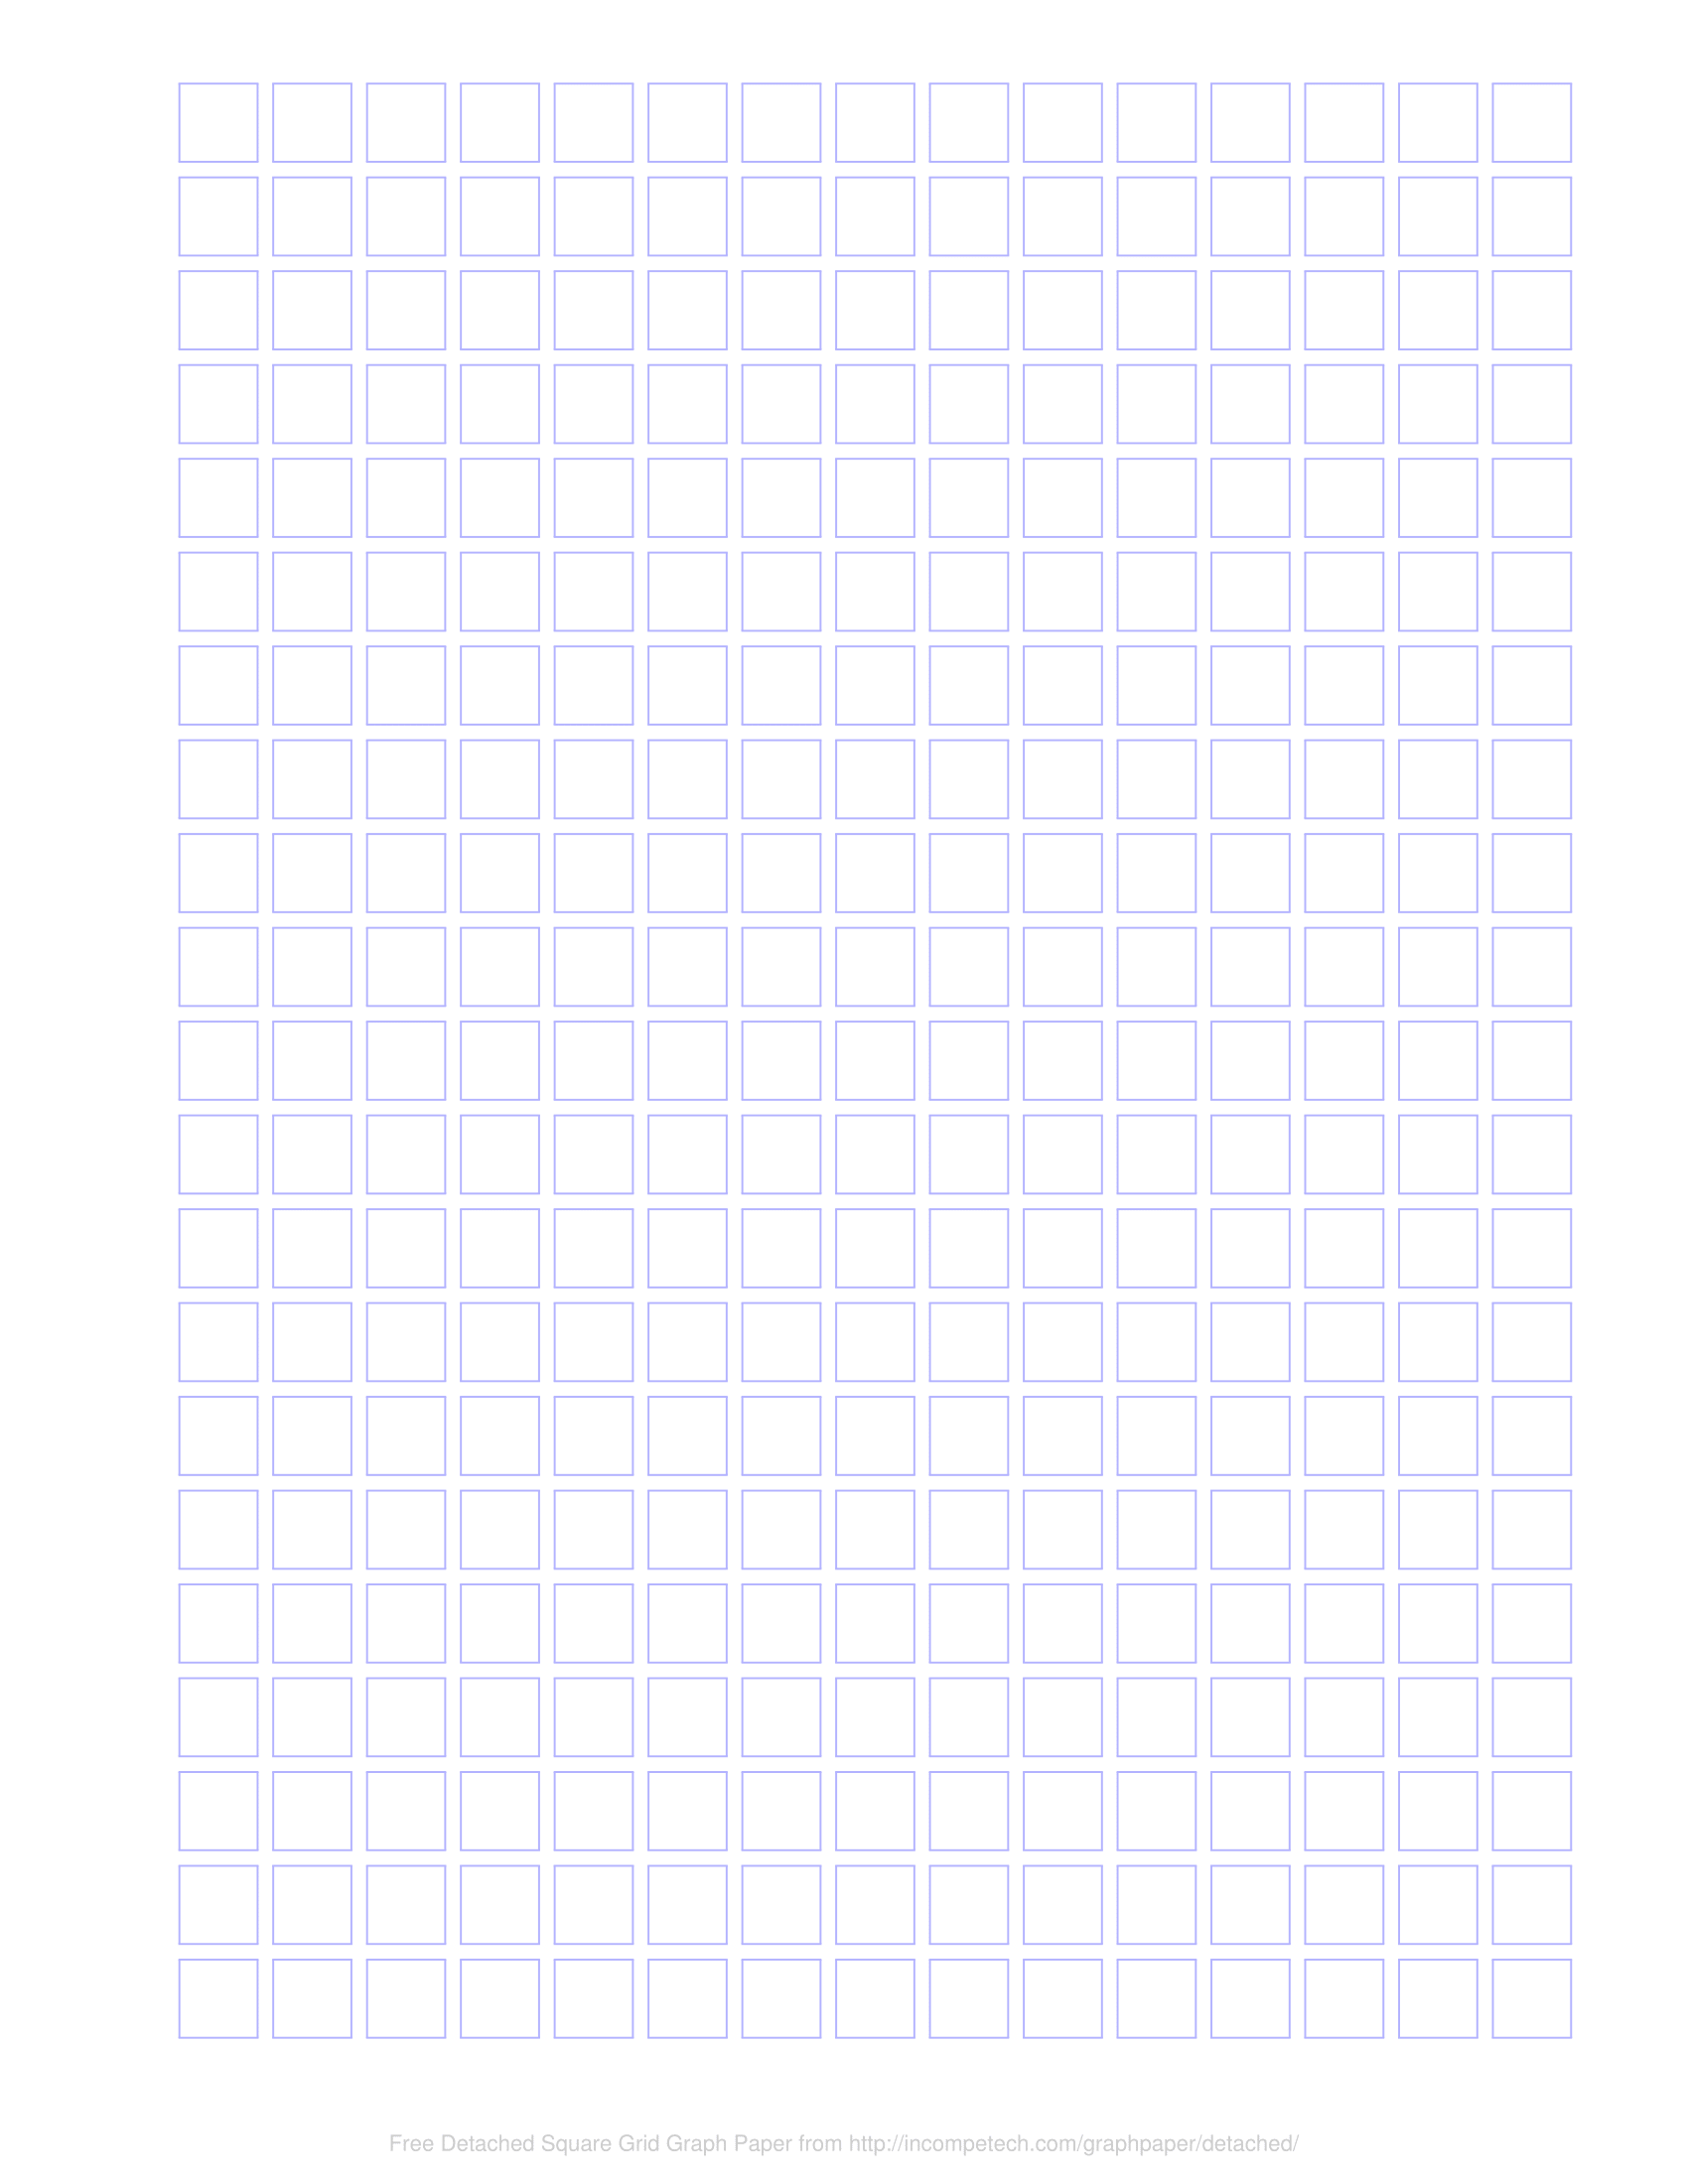 Free Online Graph Paper / Detached Squares